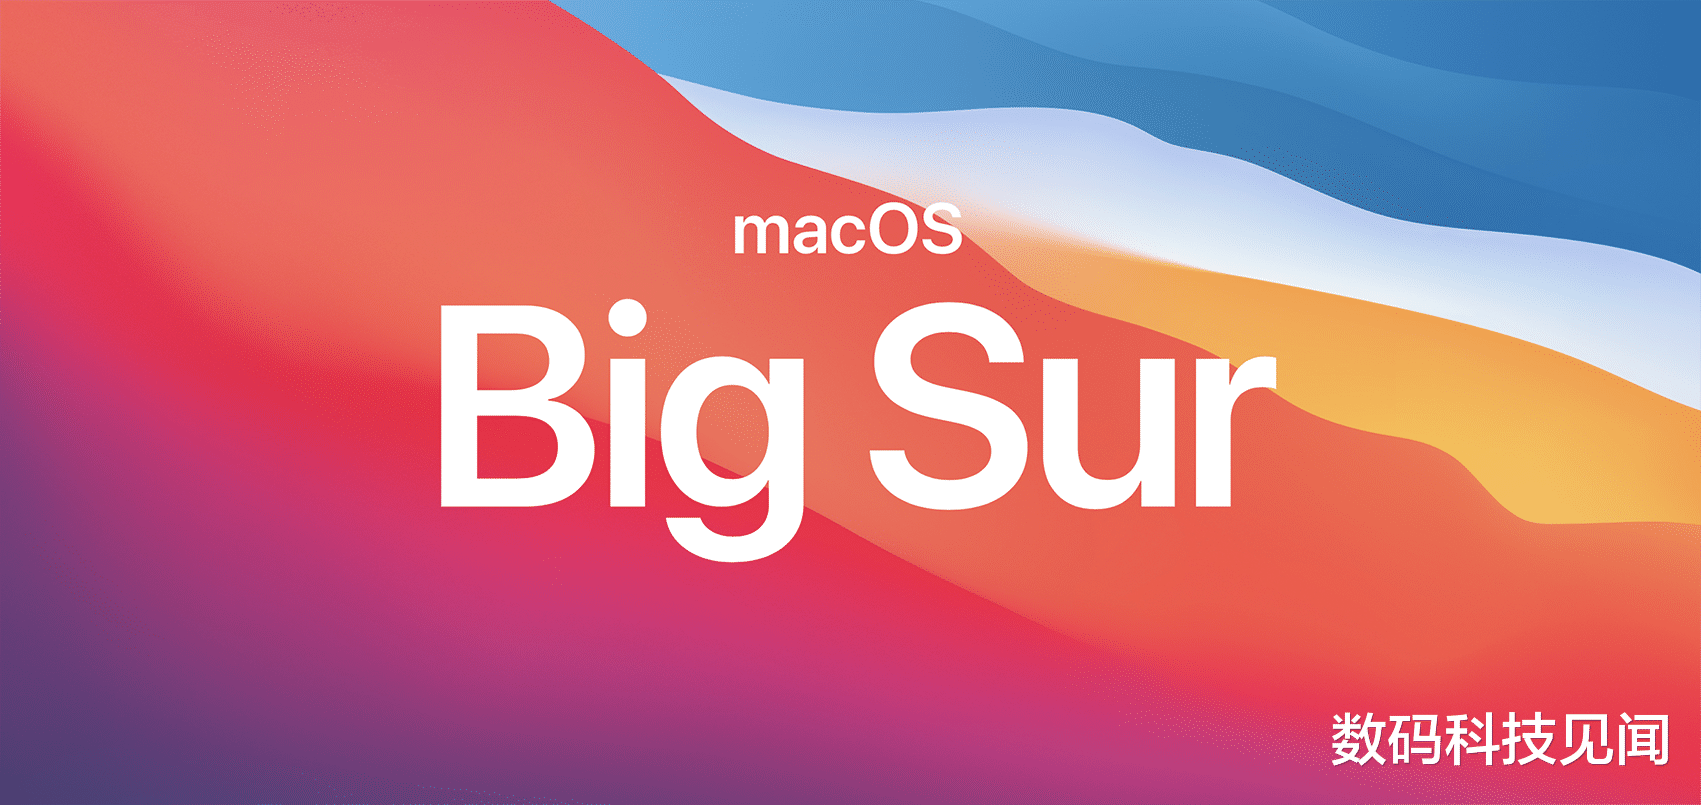 Mac OS|苹果macOS Big Sur一直存在问题，修复了旧问题，又带来新的